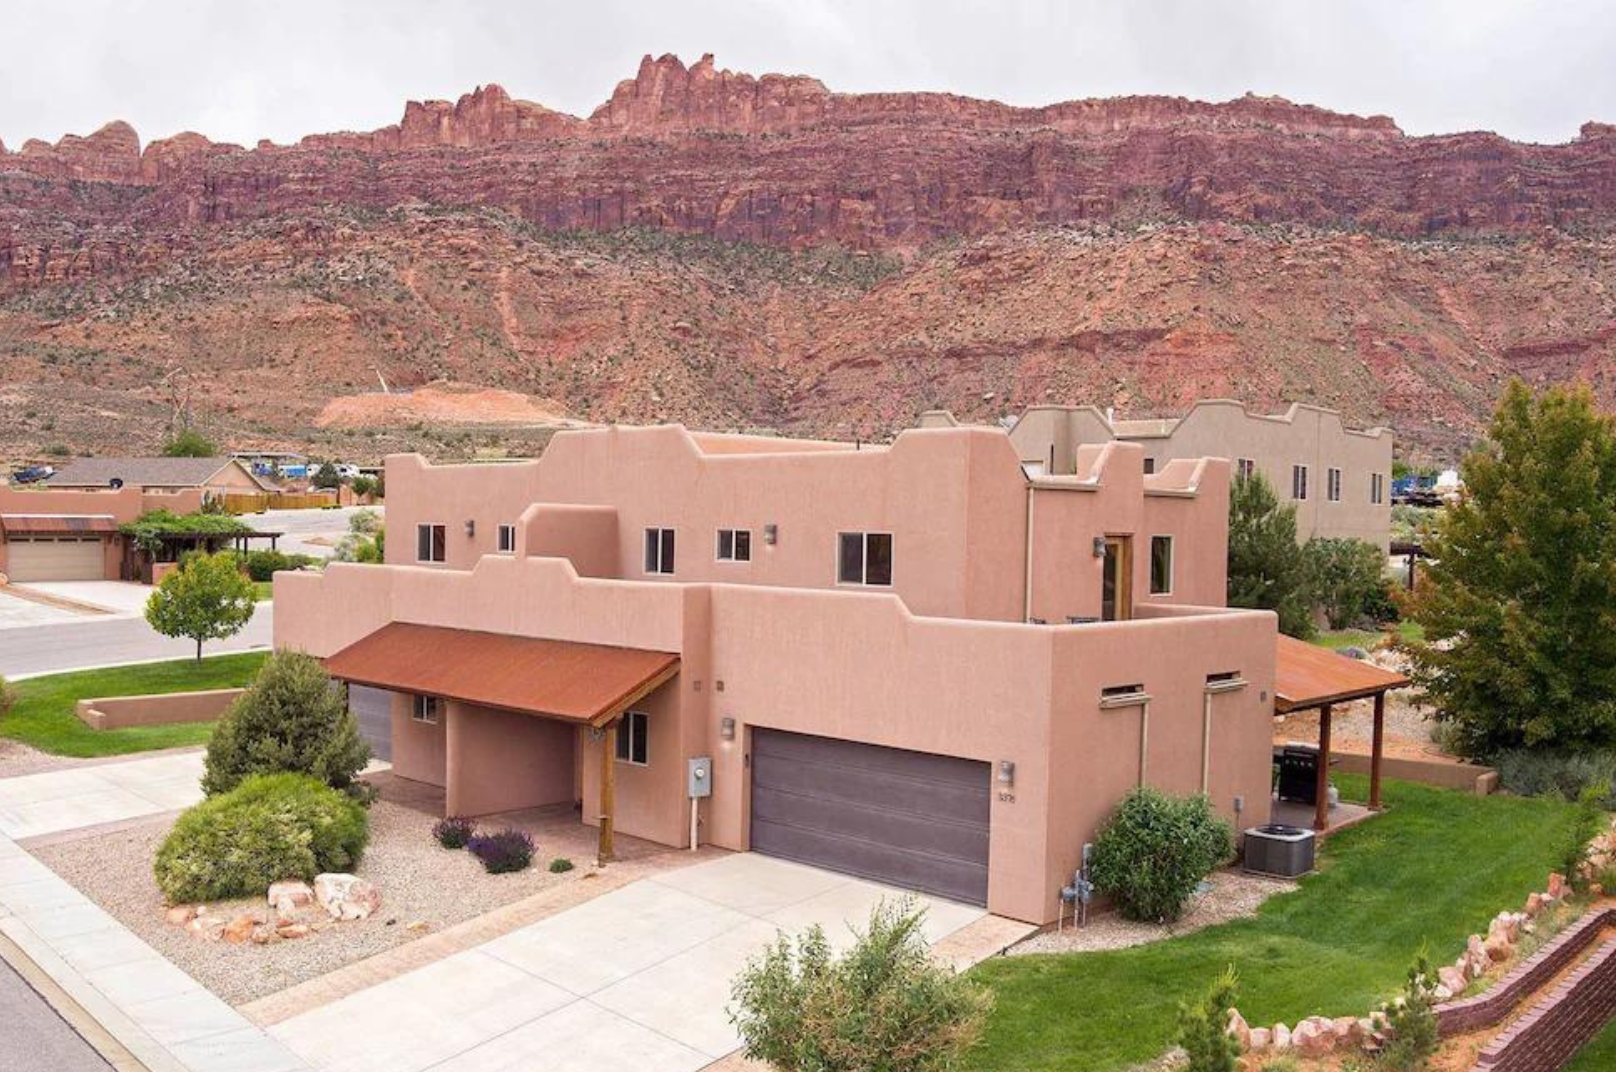 best Airbnbs in Moab, Utah